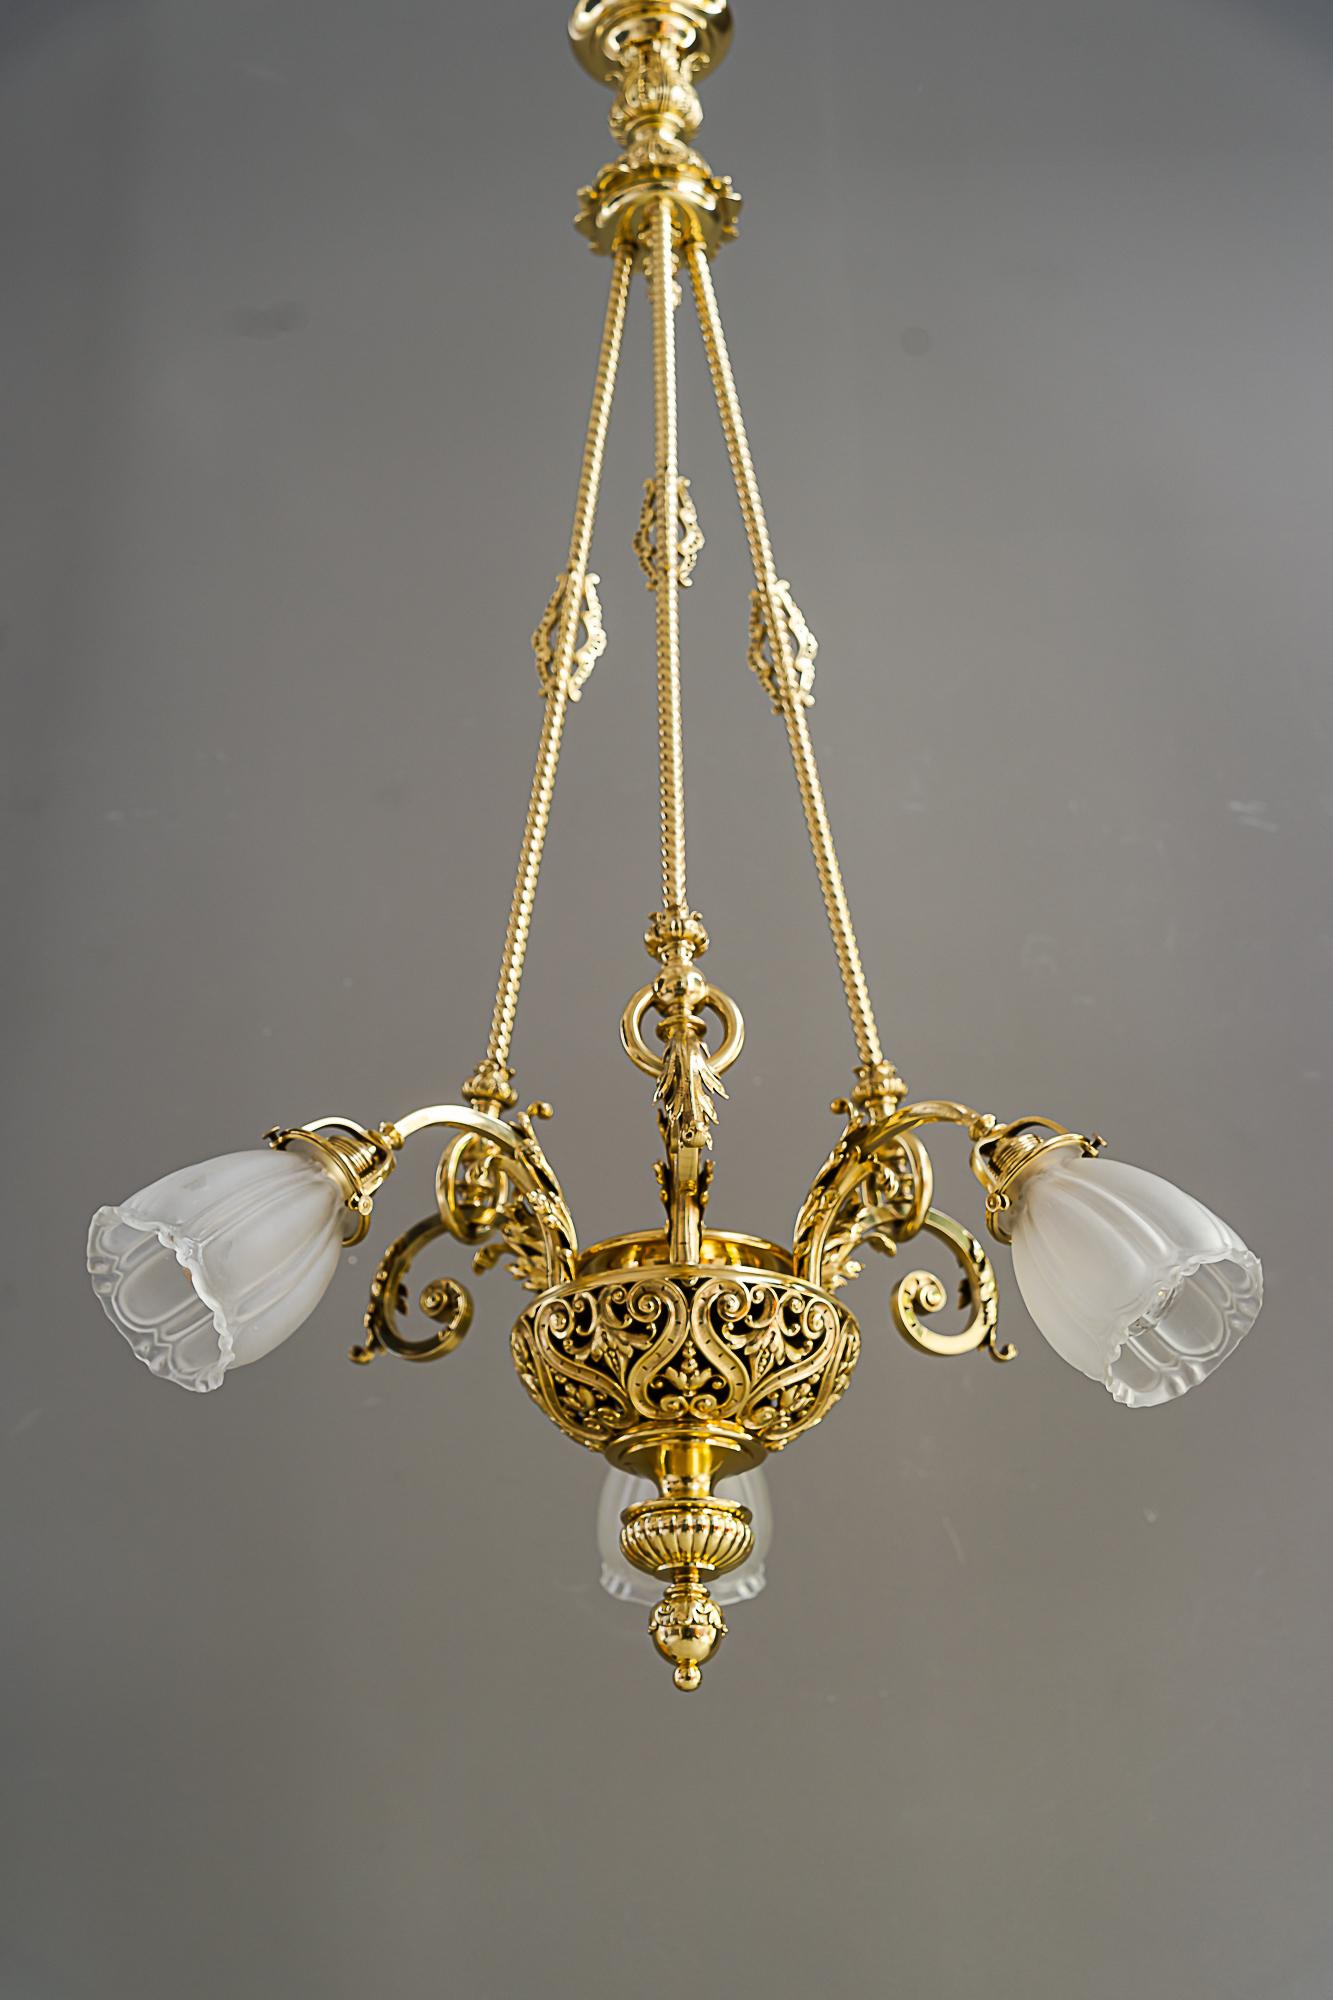 Historic chandelier vienna around 1890s with original antique glass shades For Sale 1